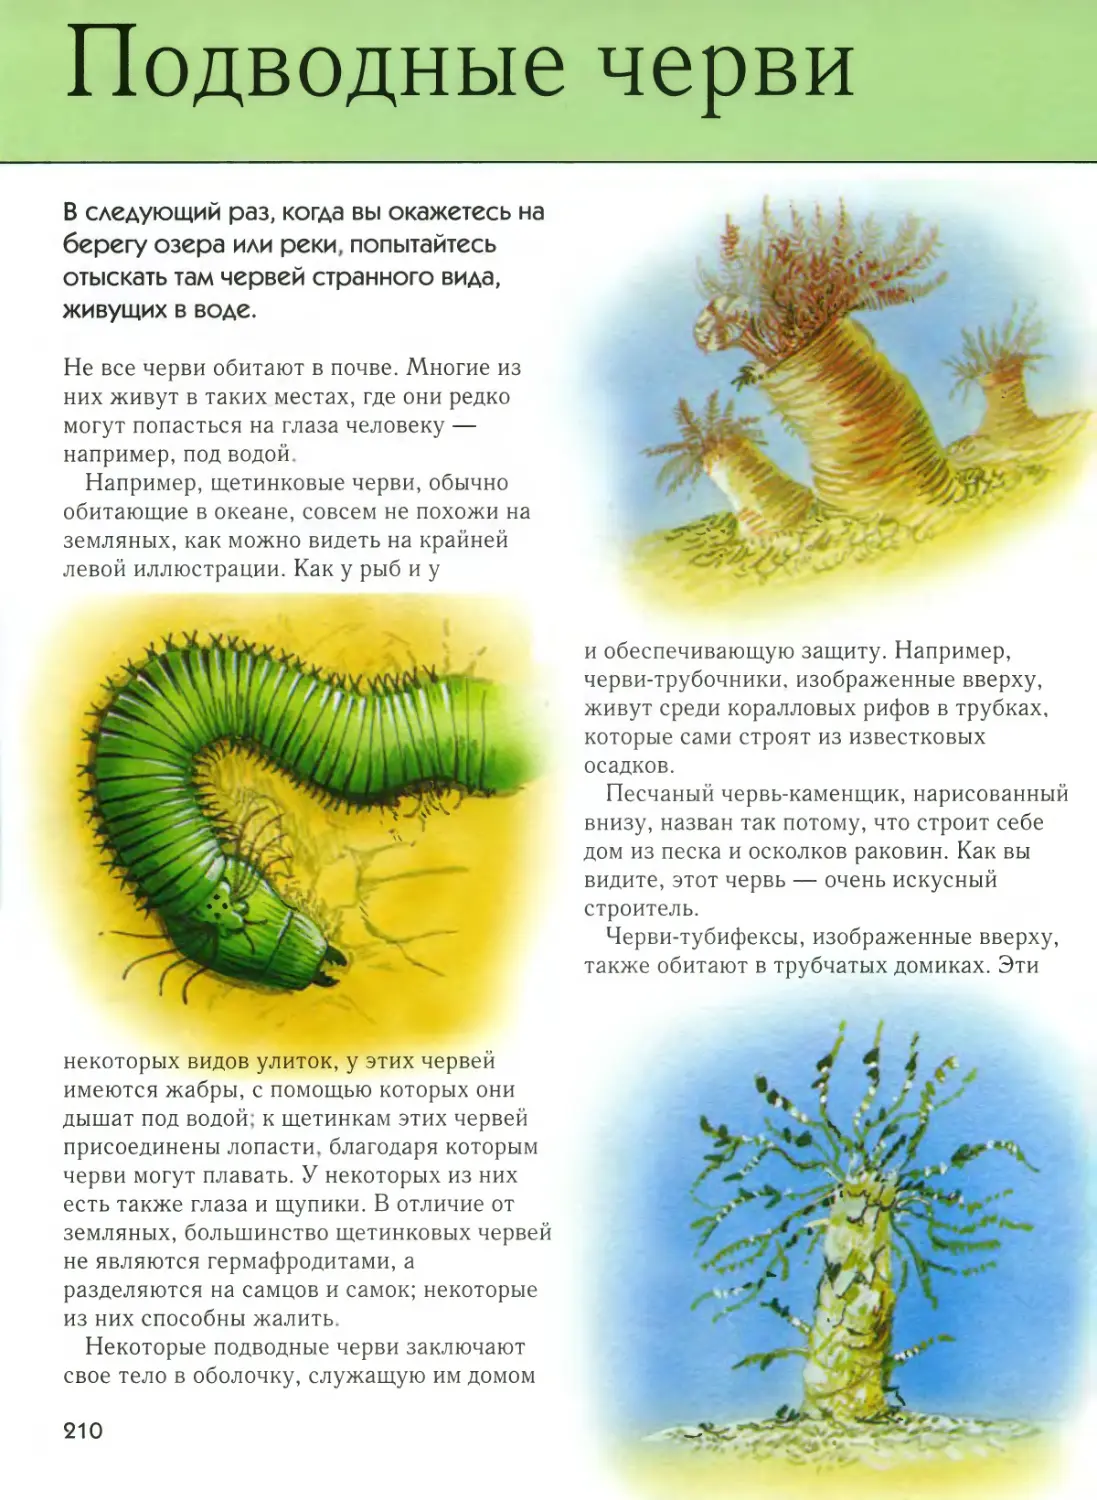 • Подводные черви